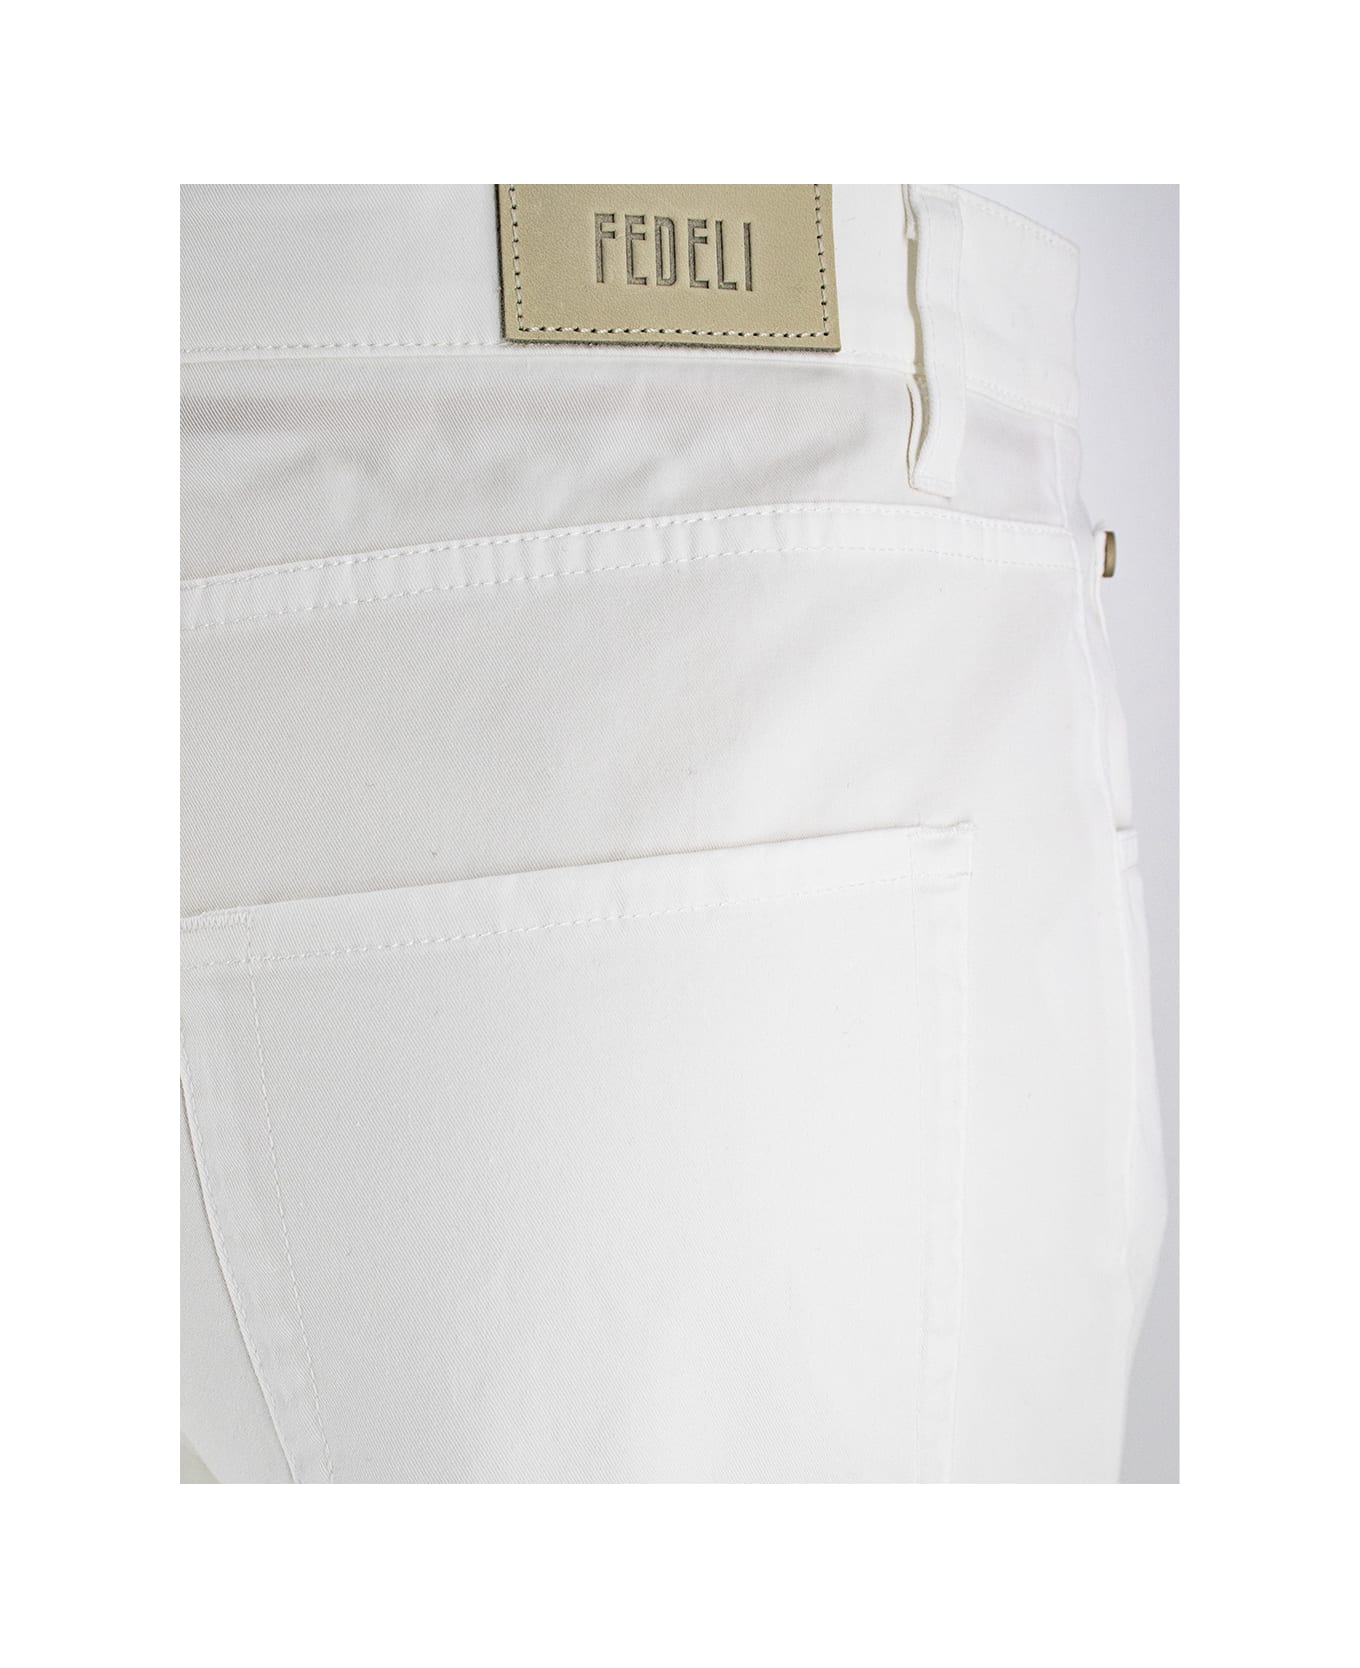 Fedeli Trousers - 7EDUD1_0041_4